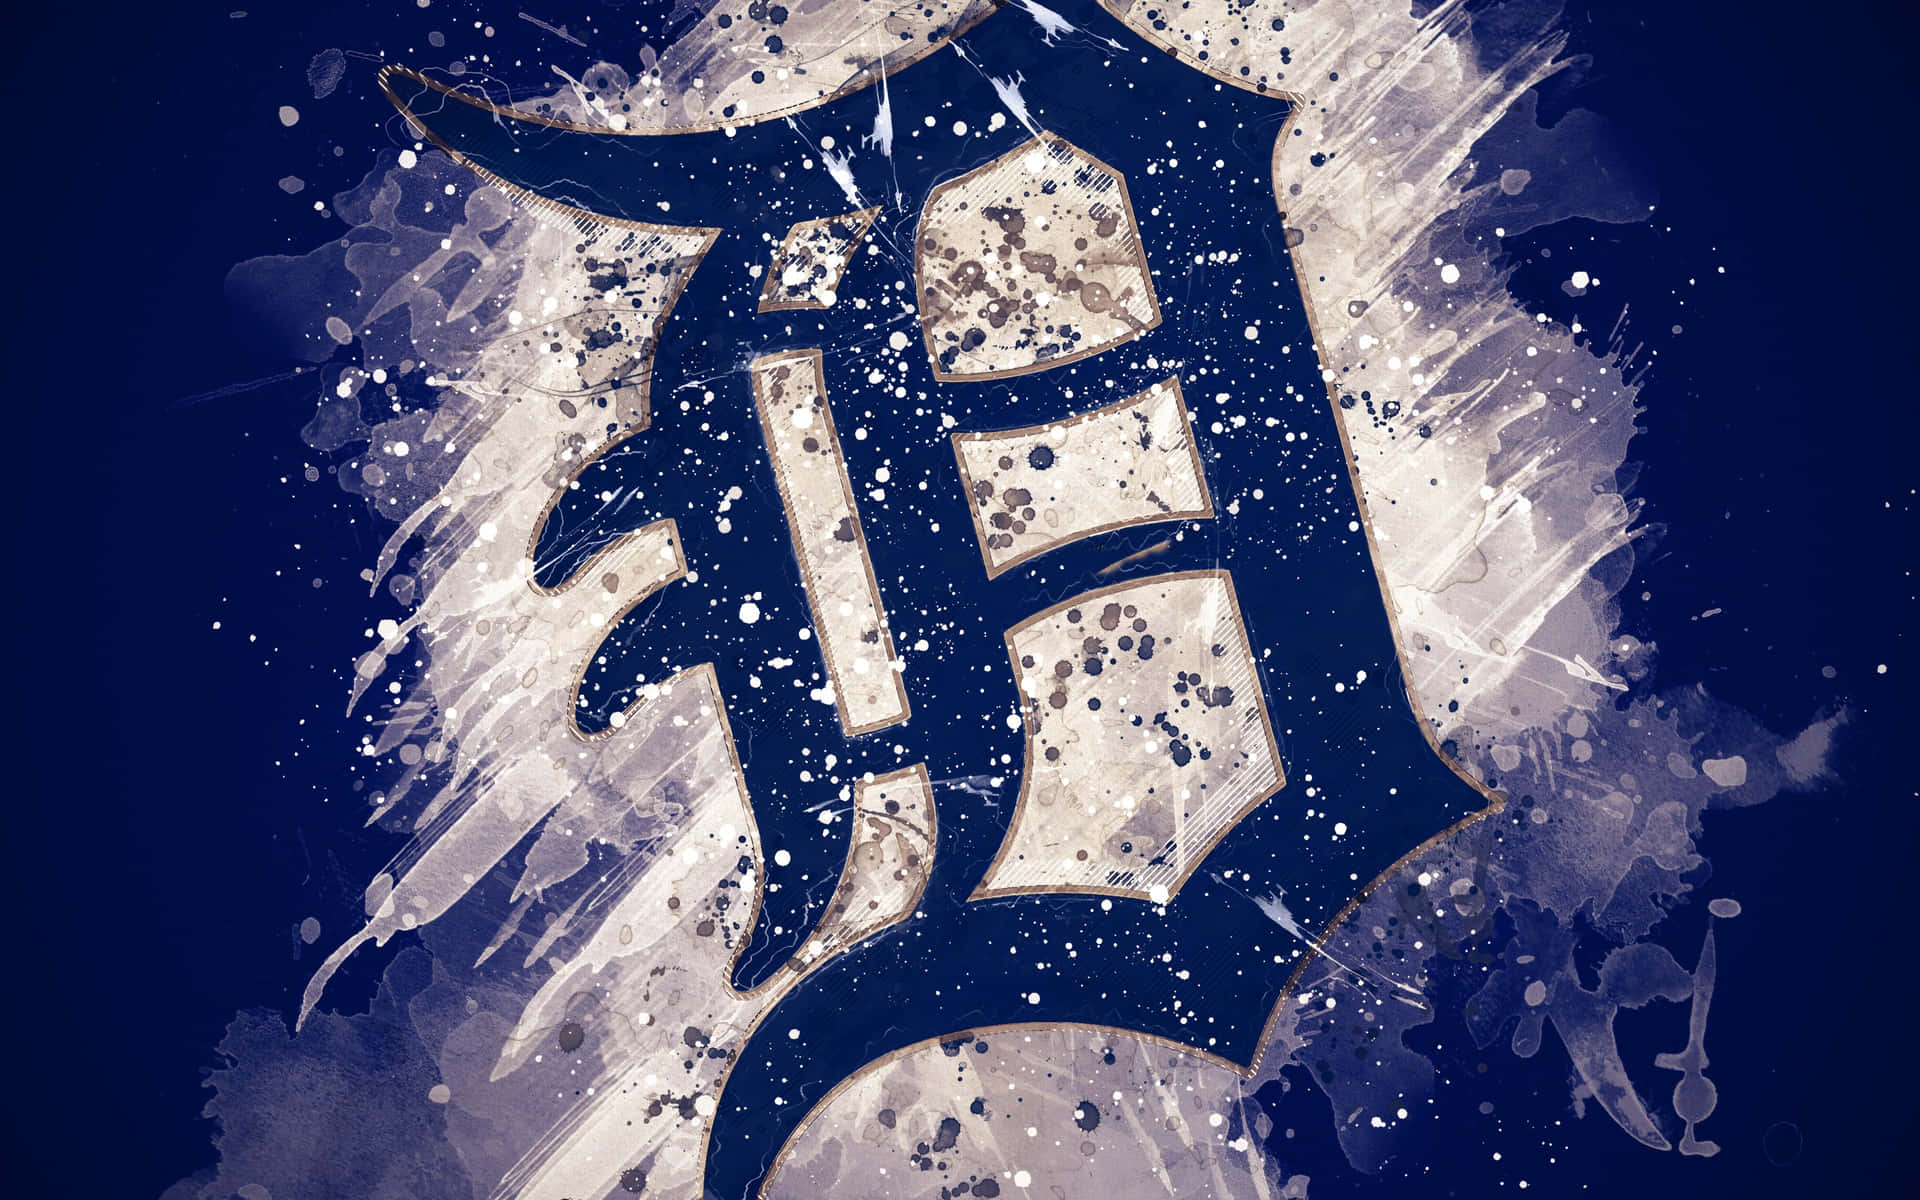 Detroittigers-logo Mit Einem Spritzer Farbe Wallpaper